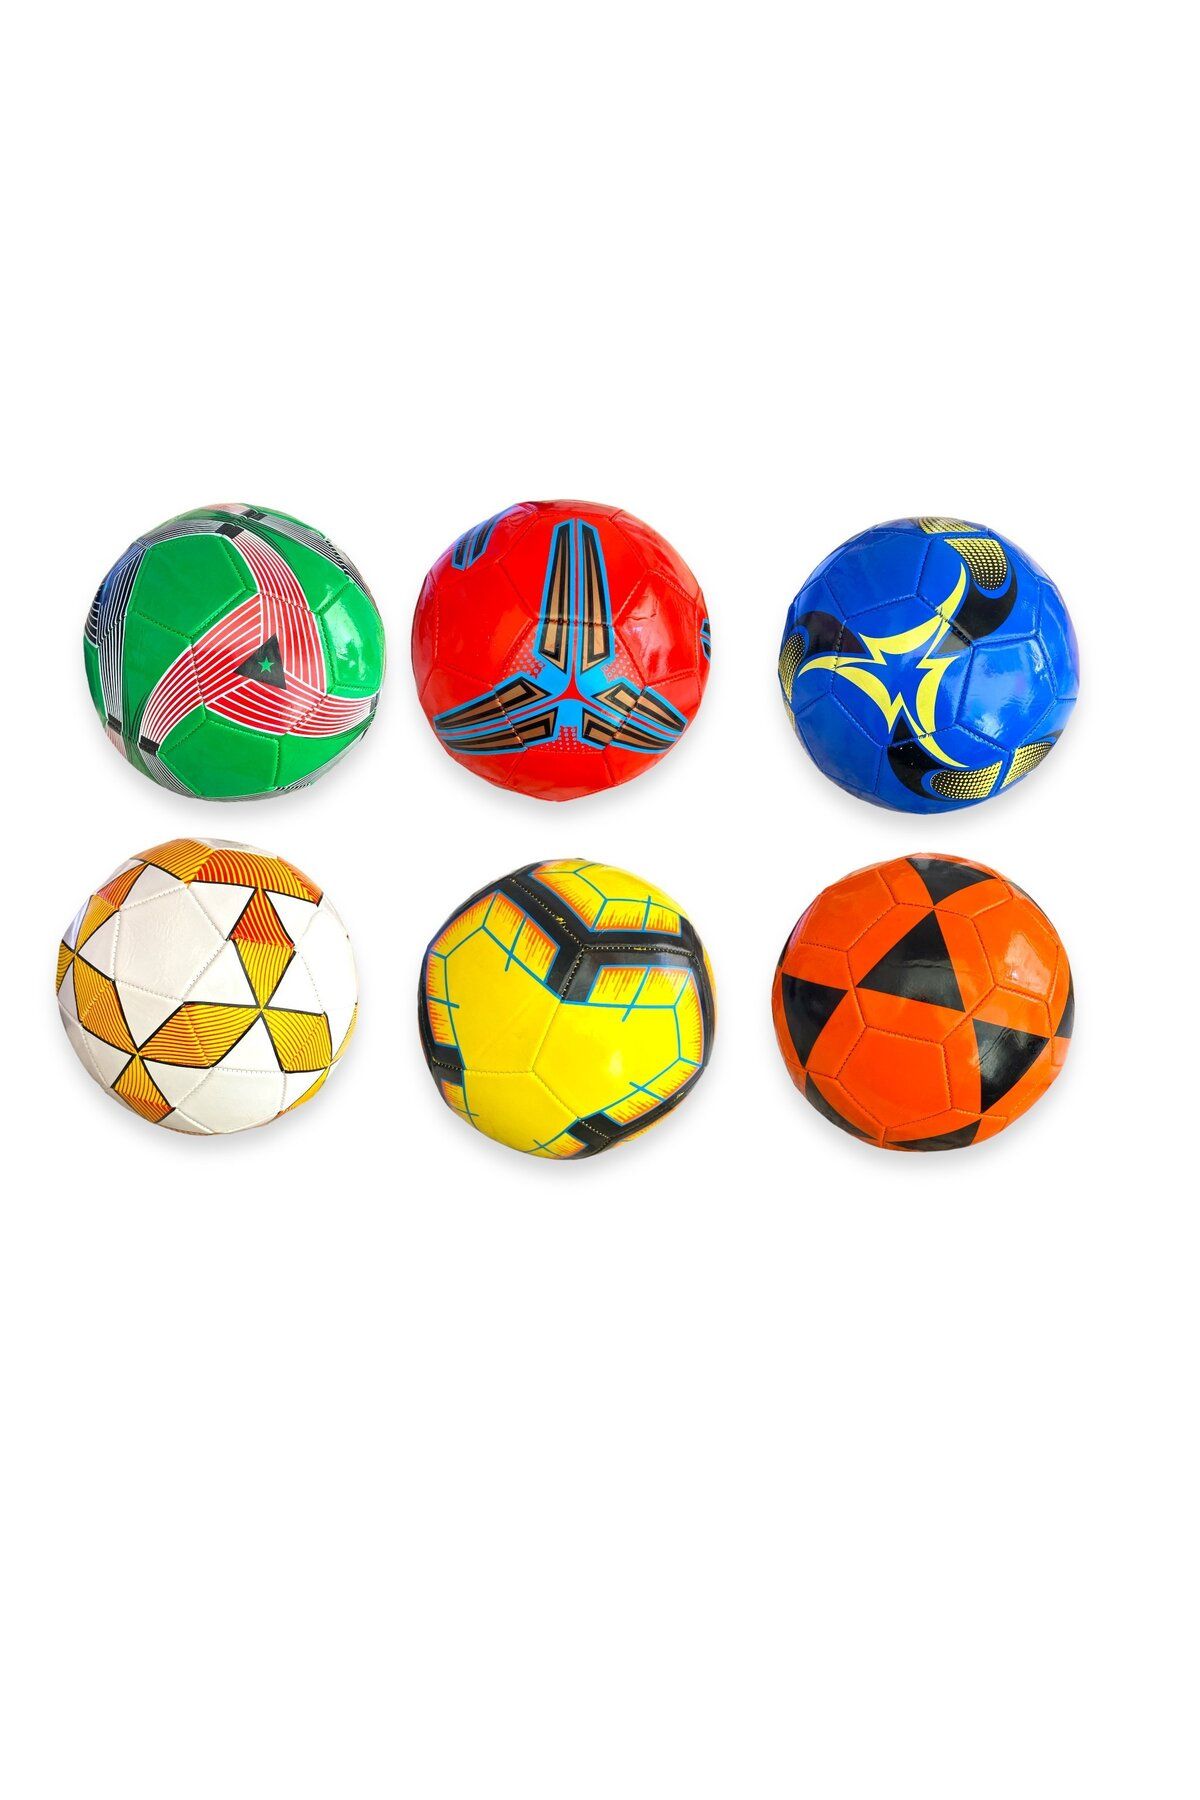 deniz sport Taraftar Futbol Topu Dikişli Futbol Topu Renkli Futbol